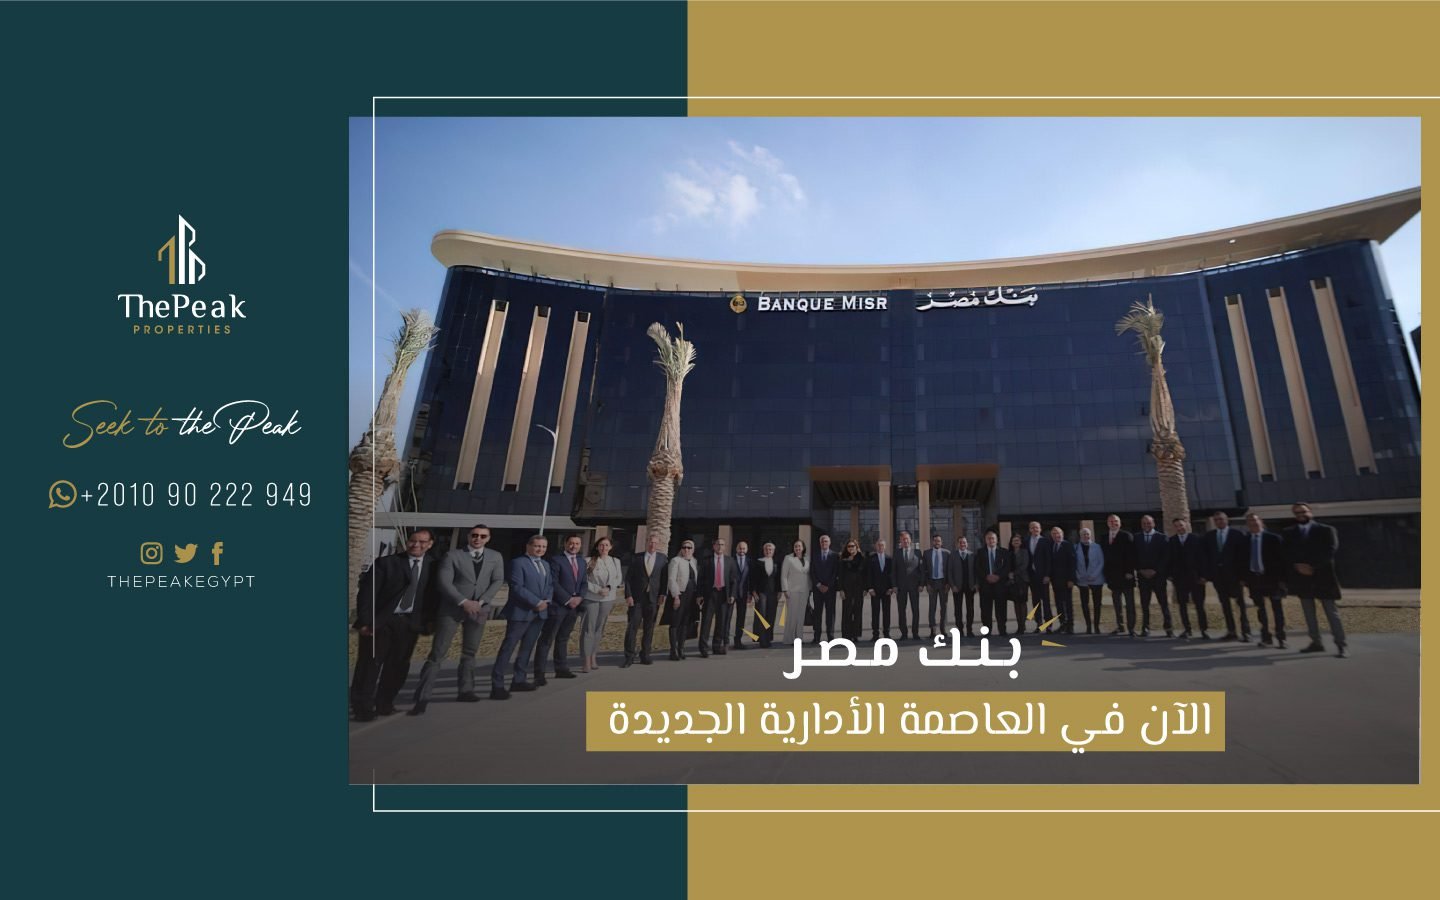 بنك مصر الان في العاصمة الإدارية الجديدة | THE PEAK PROPERTIES